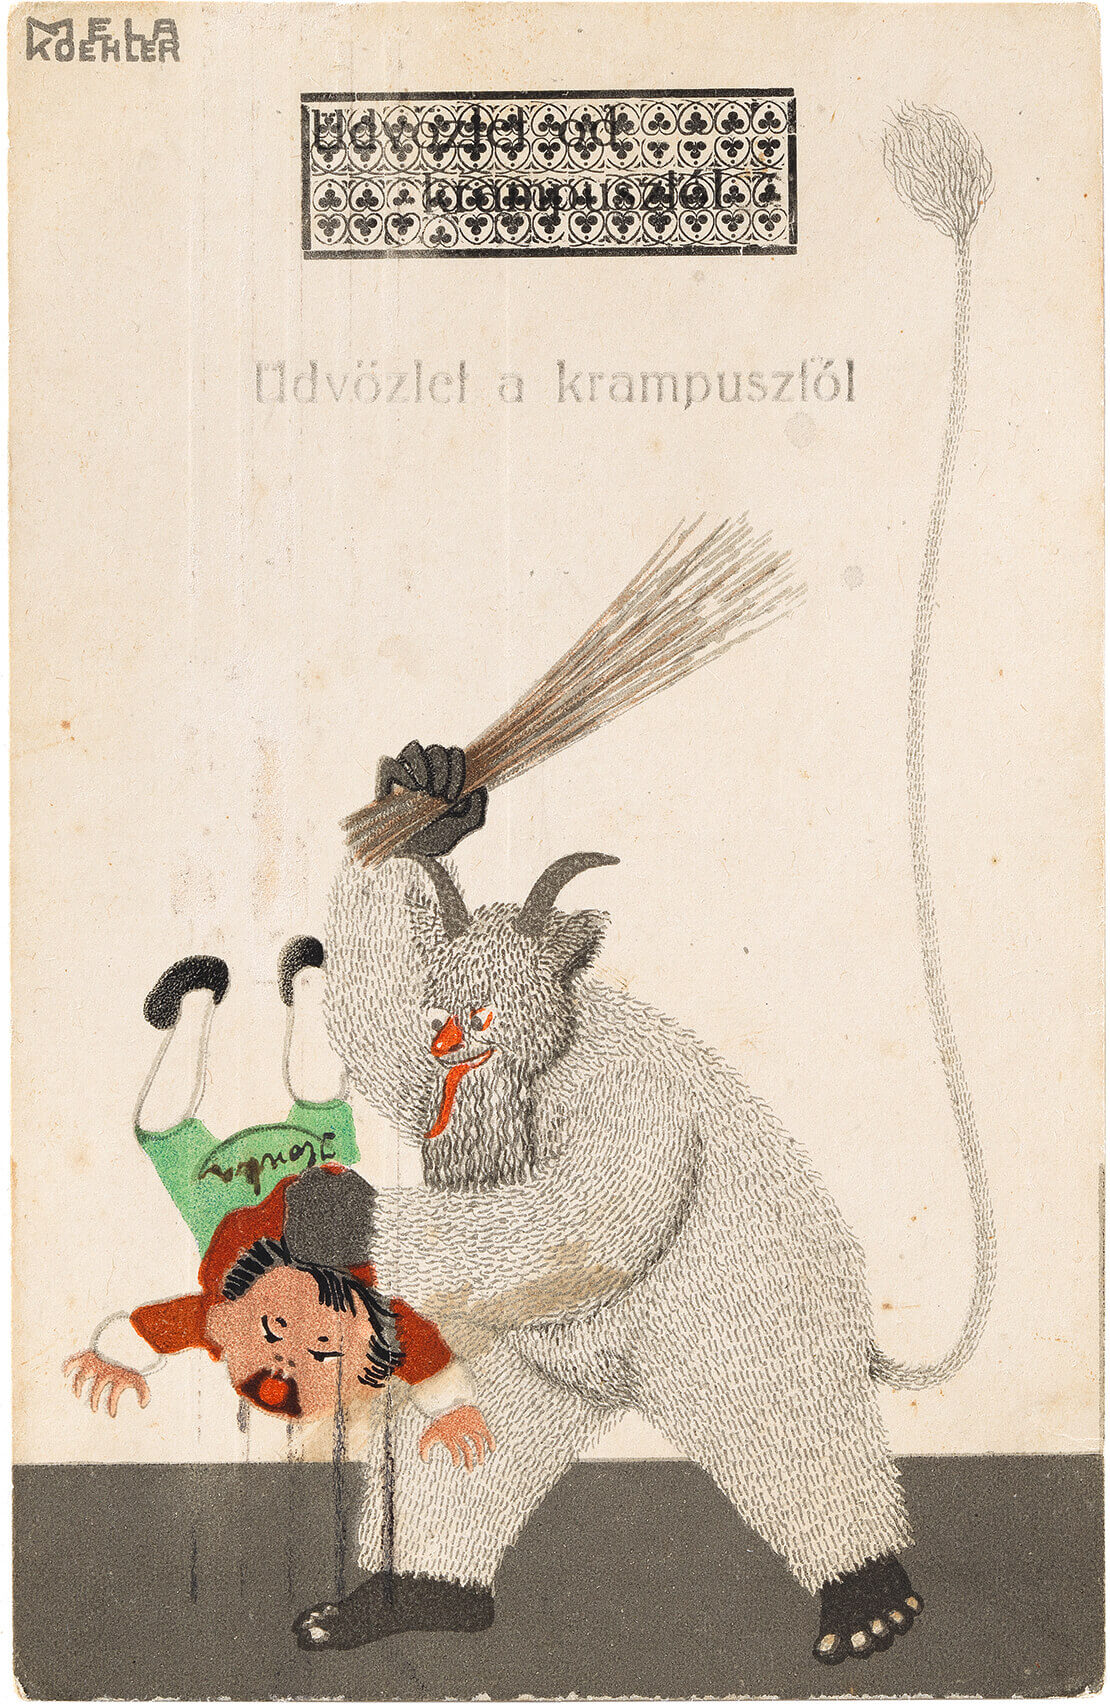 Krampus-Grußkarte von Mela Köhler für die Wiener Werkstätte, 1911, Wien Museum 